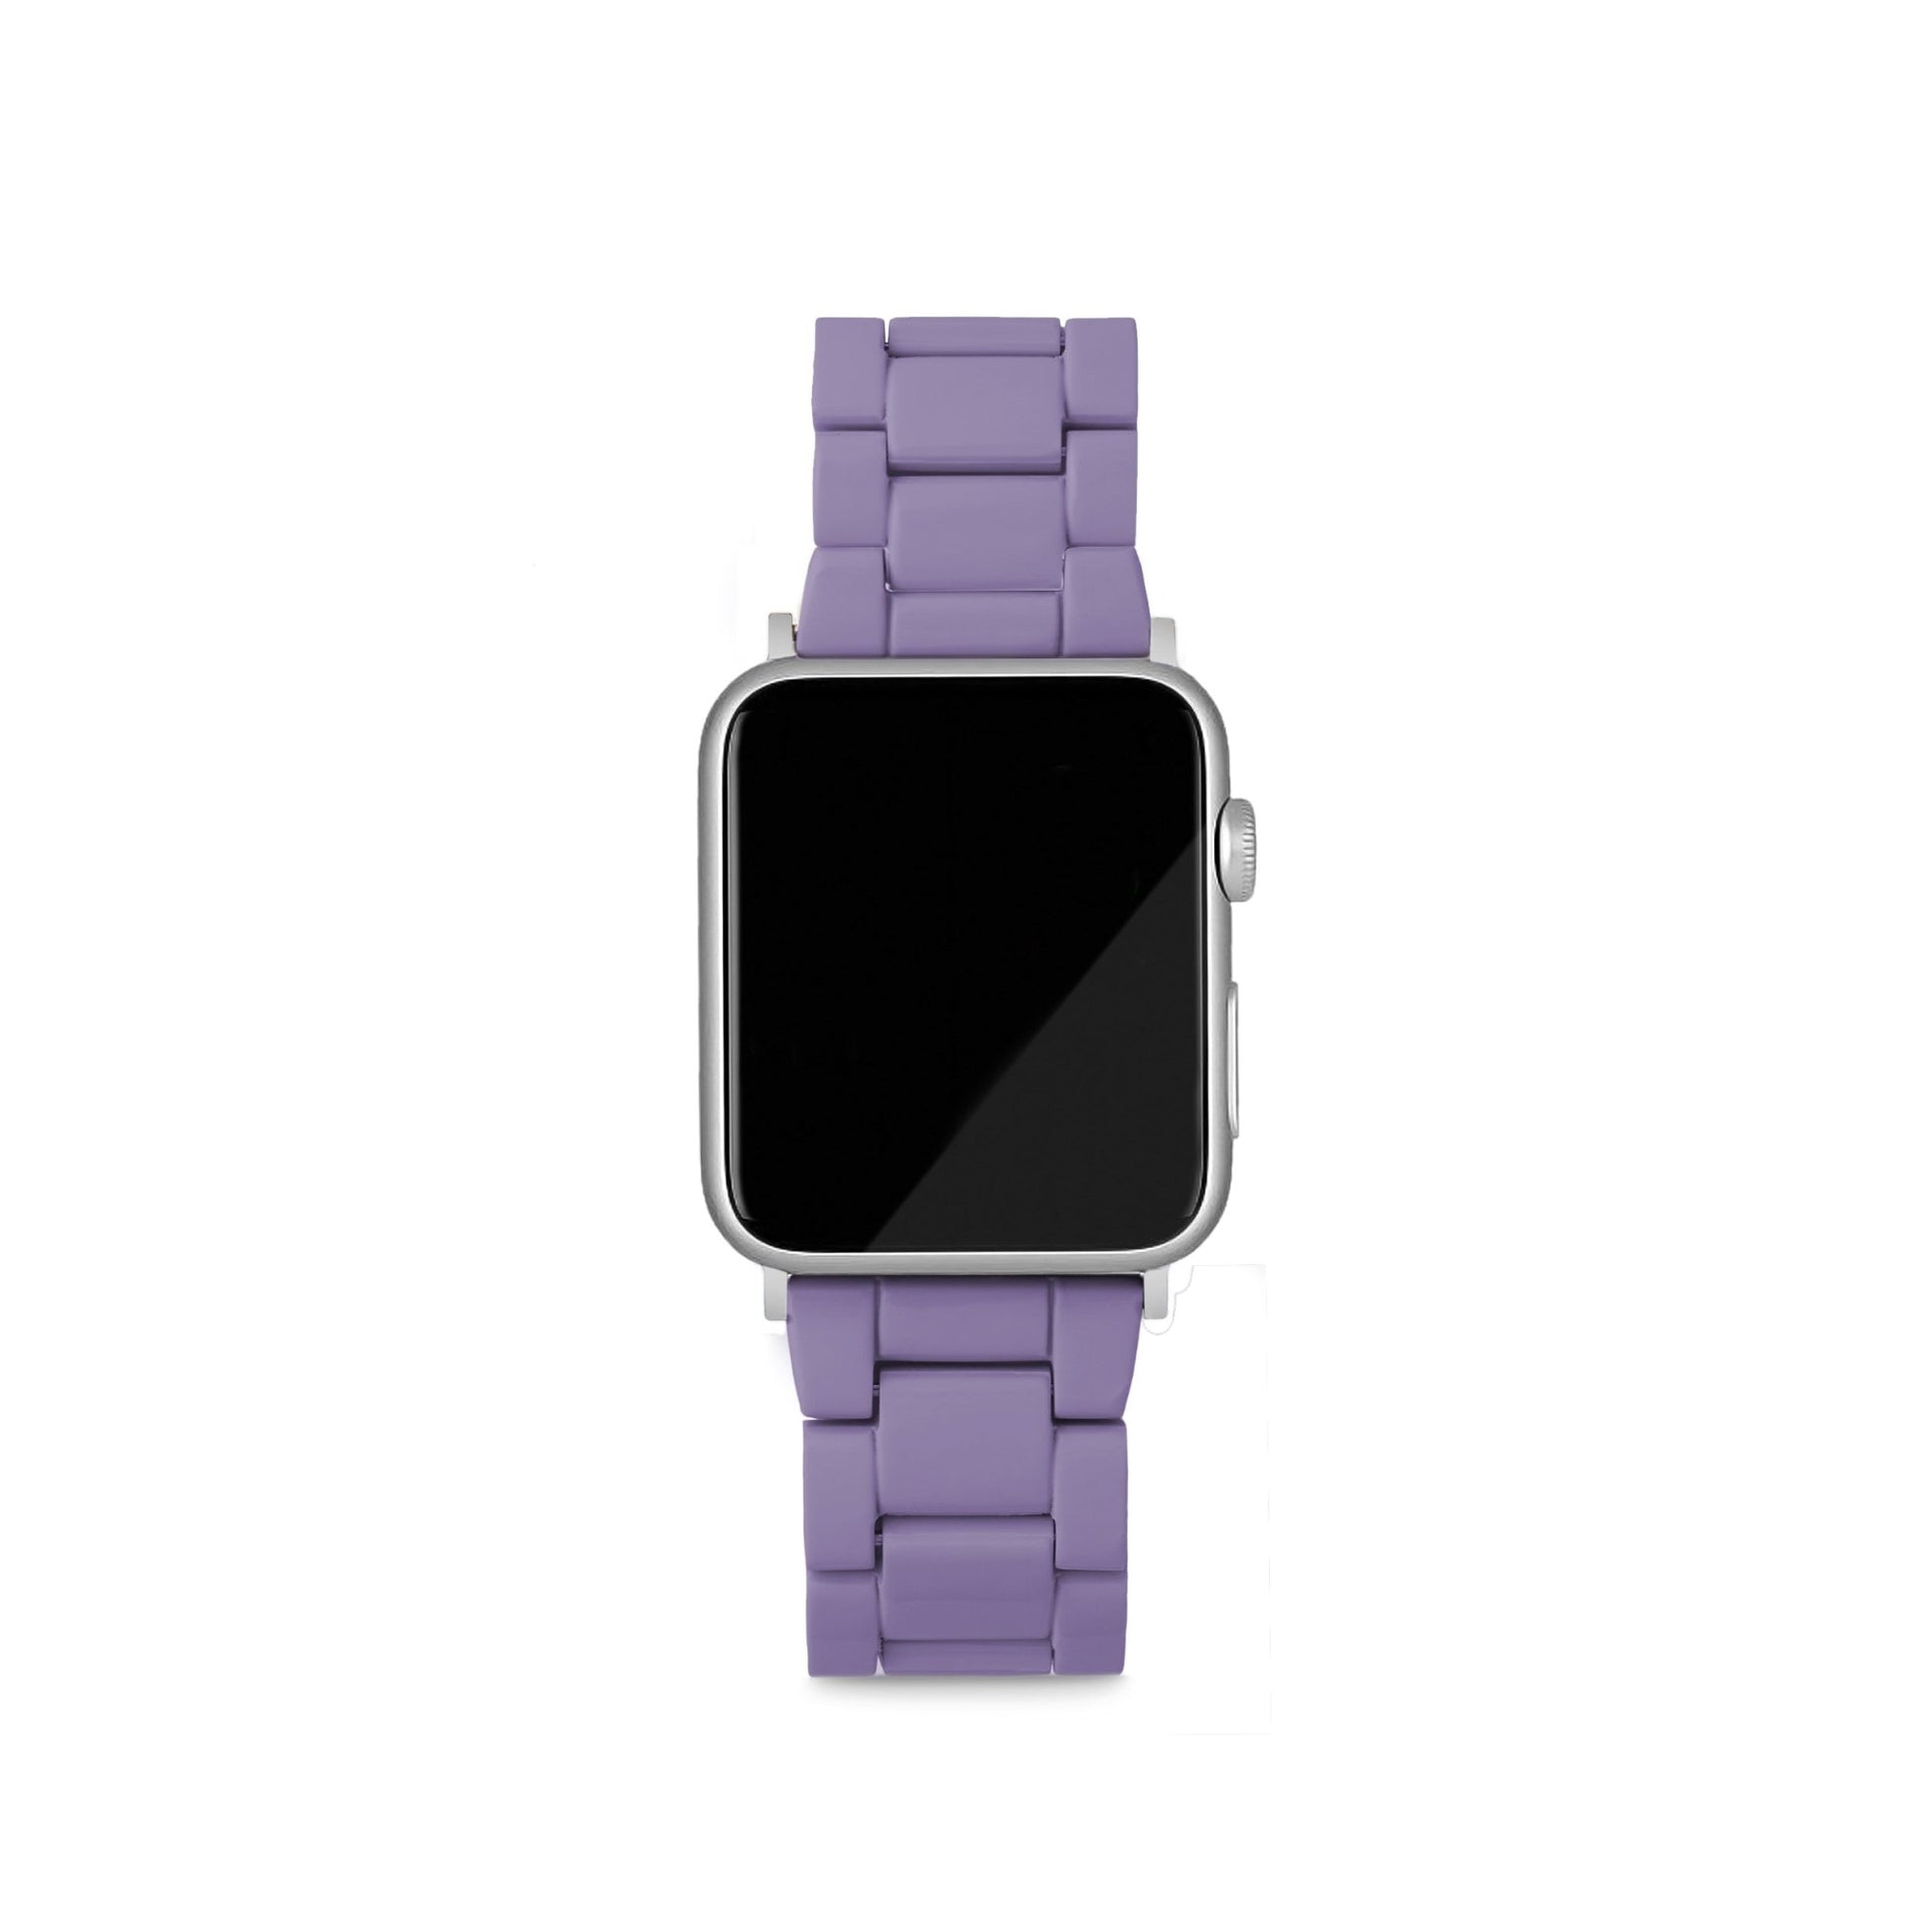 MACHETE Apple Watch Band in Violet